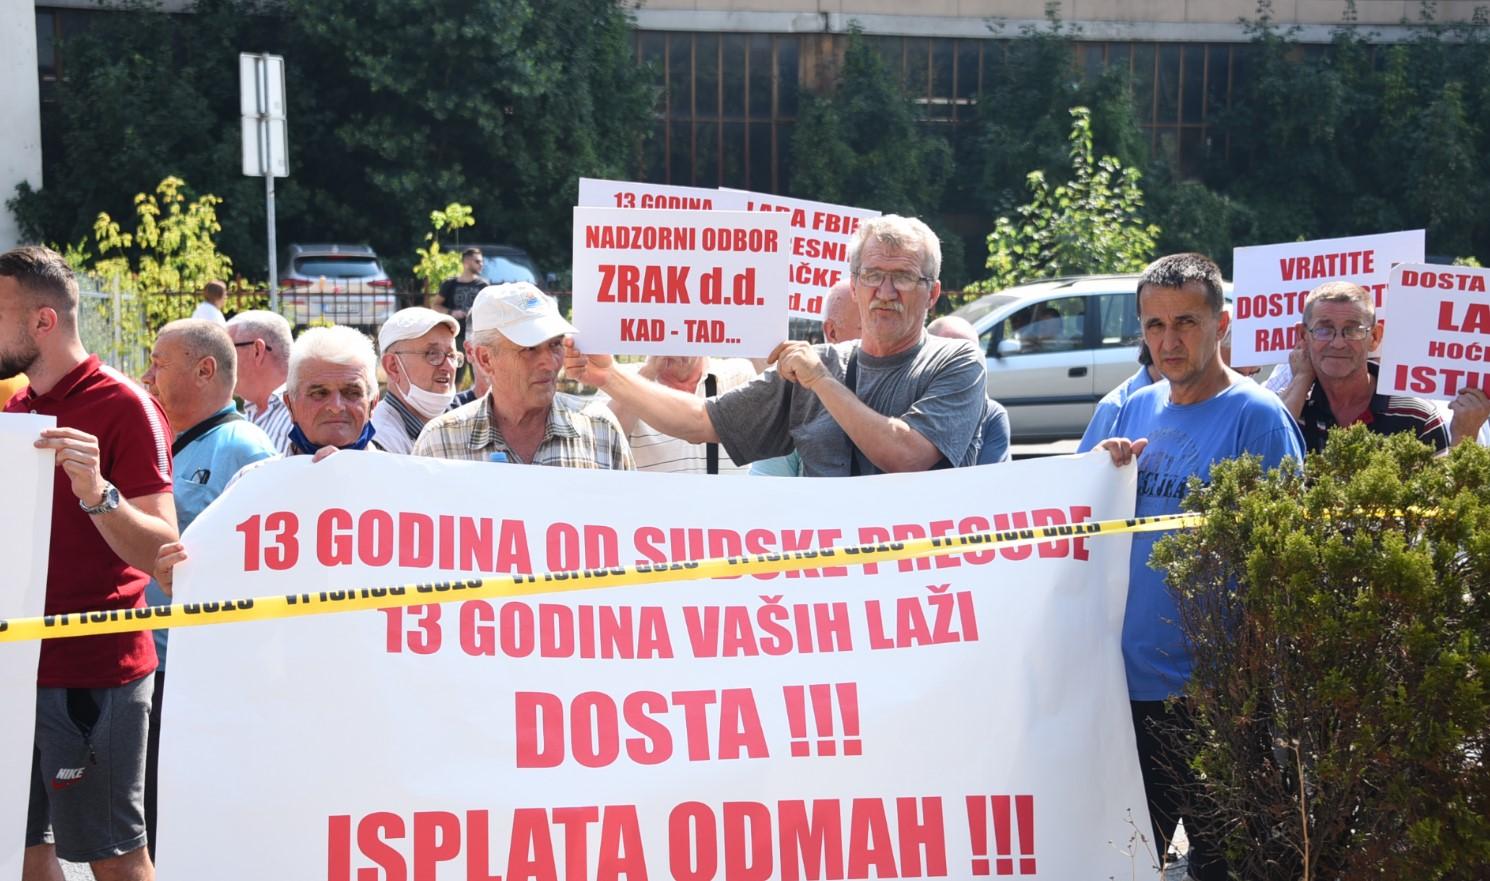 Radnici "Zraka" na protestima ispred zgrade Vlade FBiH: Traže smjenu Uprave i zaostale plaće